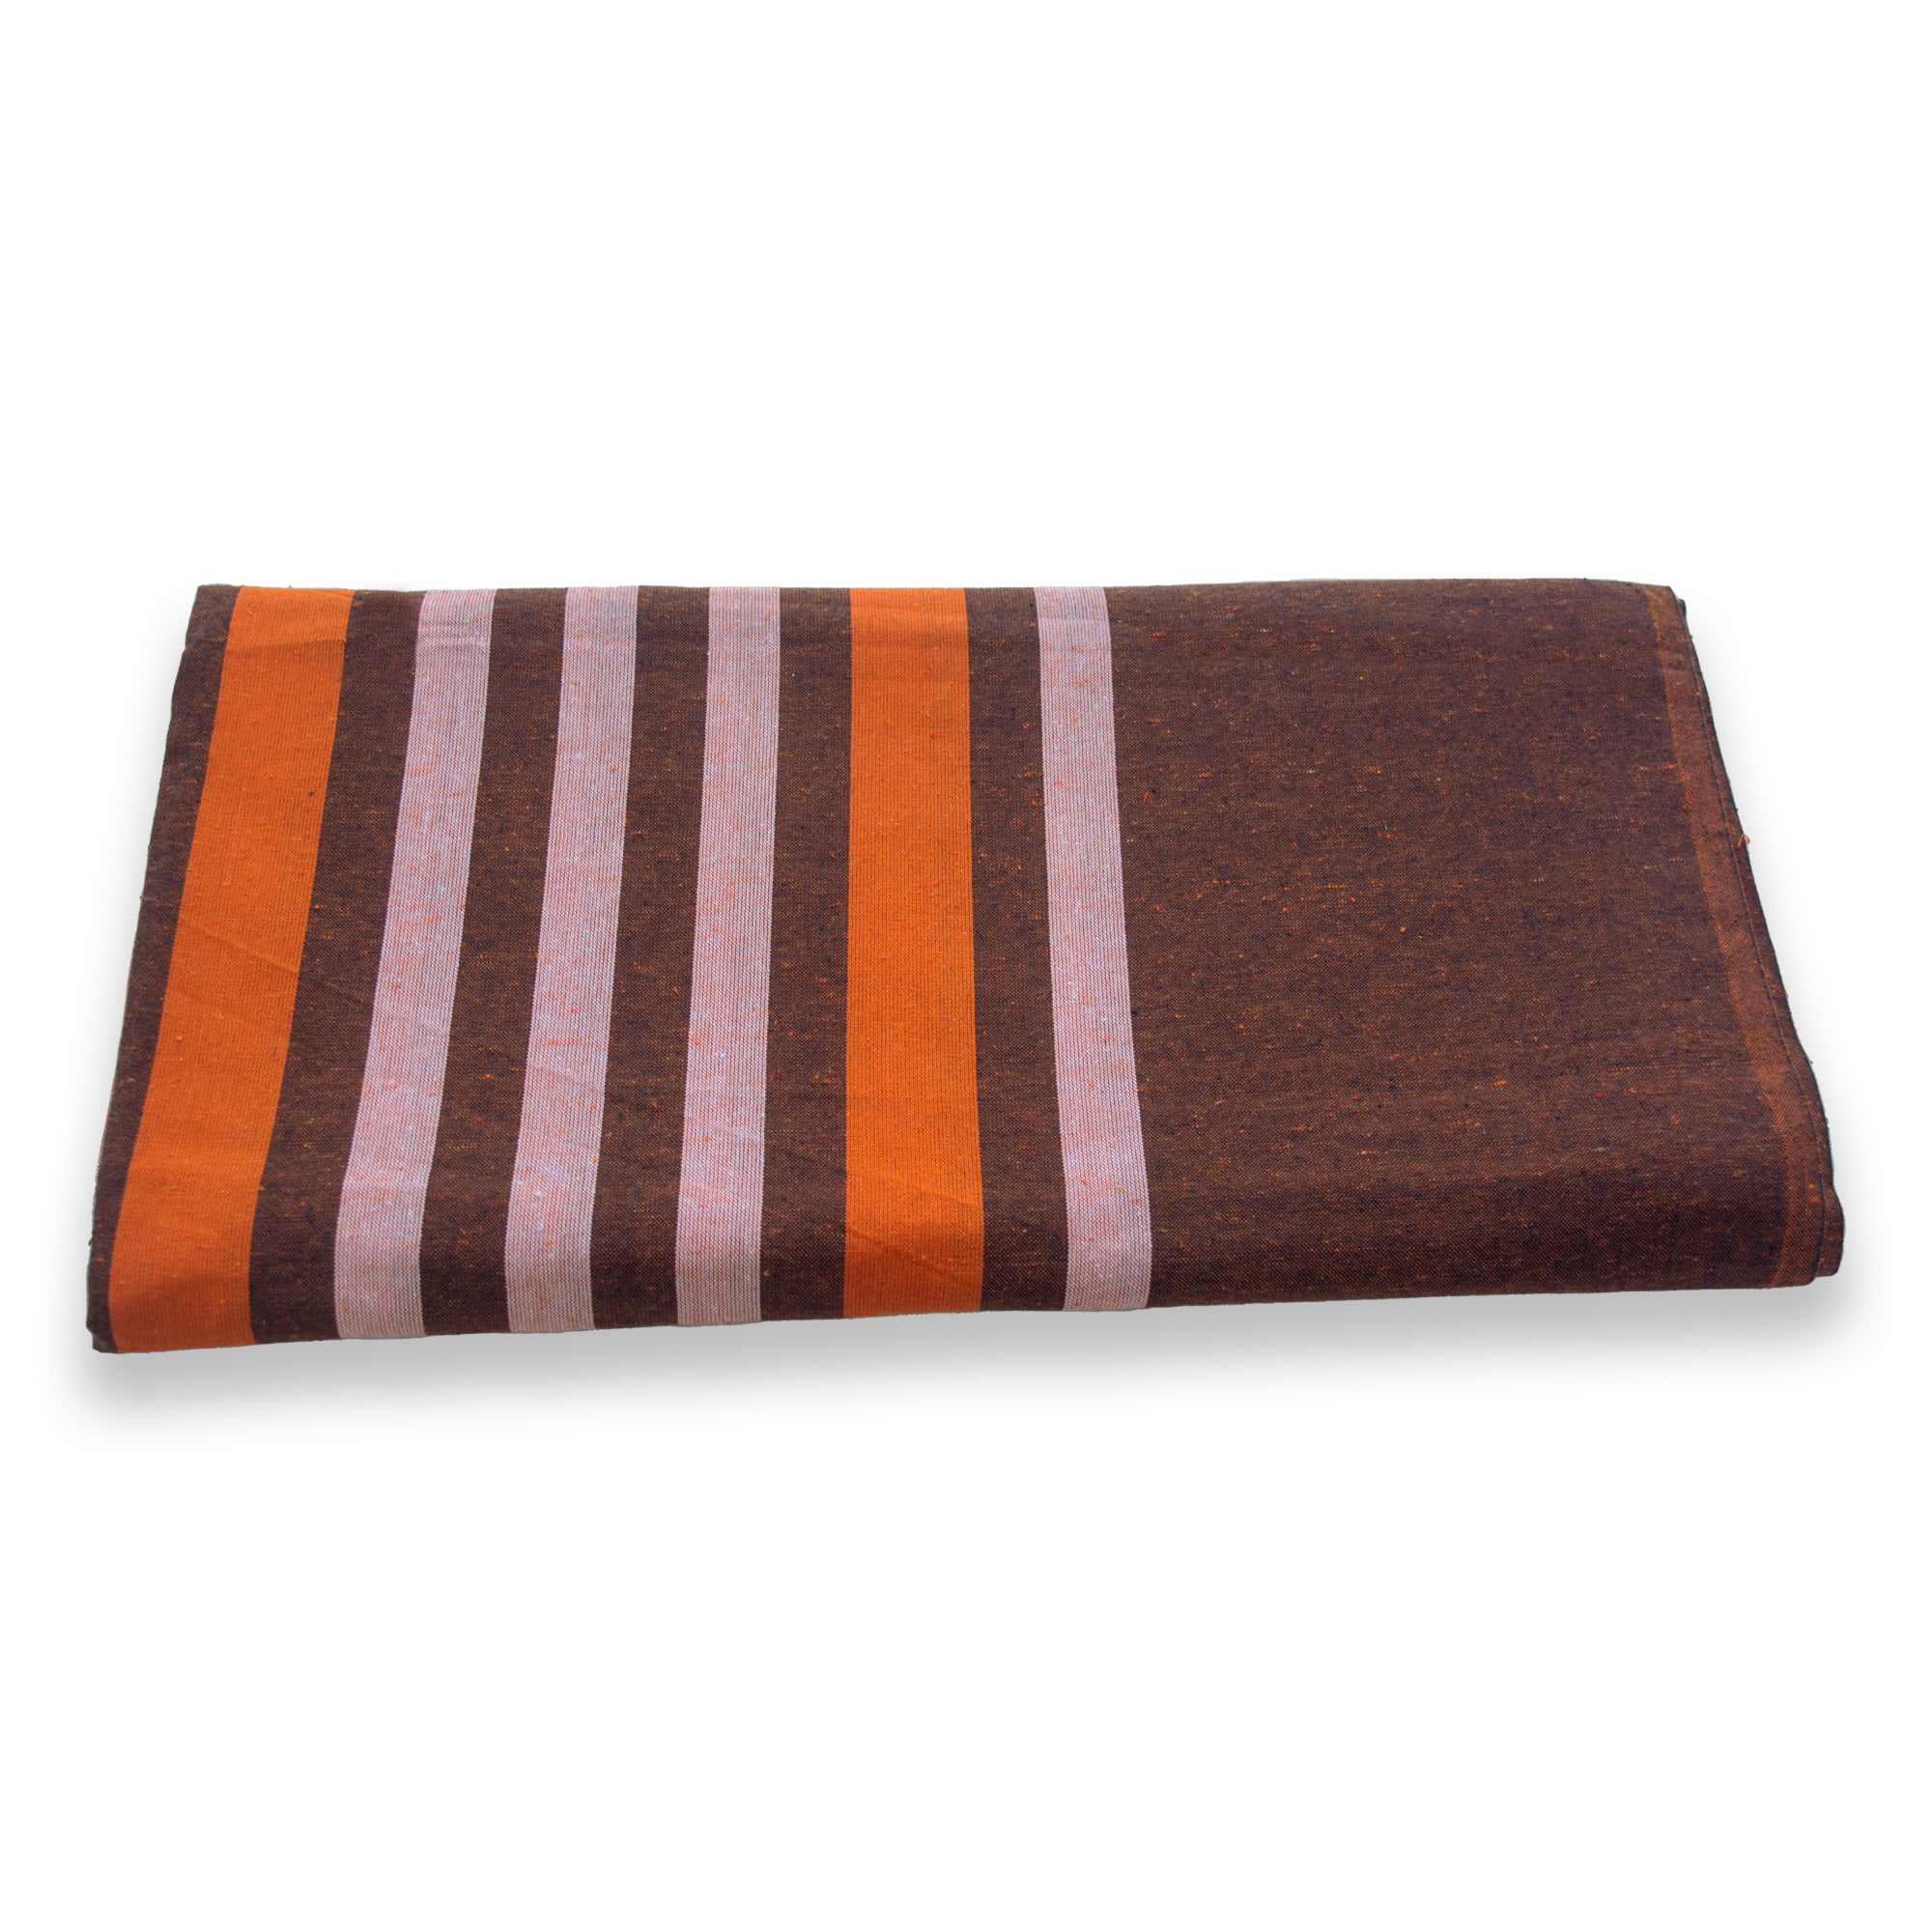 90x90 Brown & Orange Bed Sheet